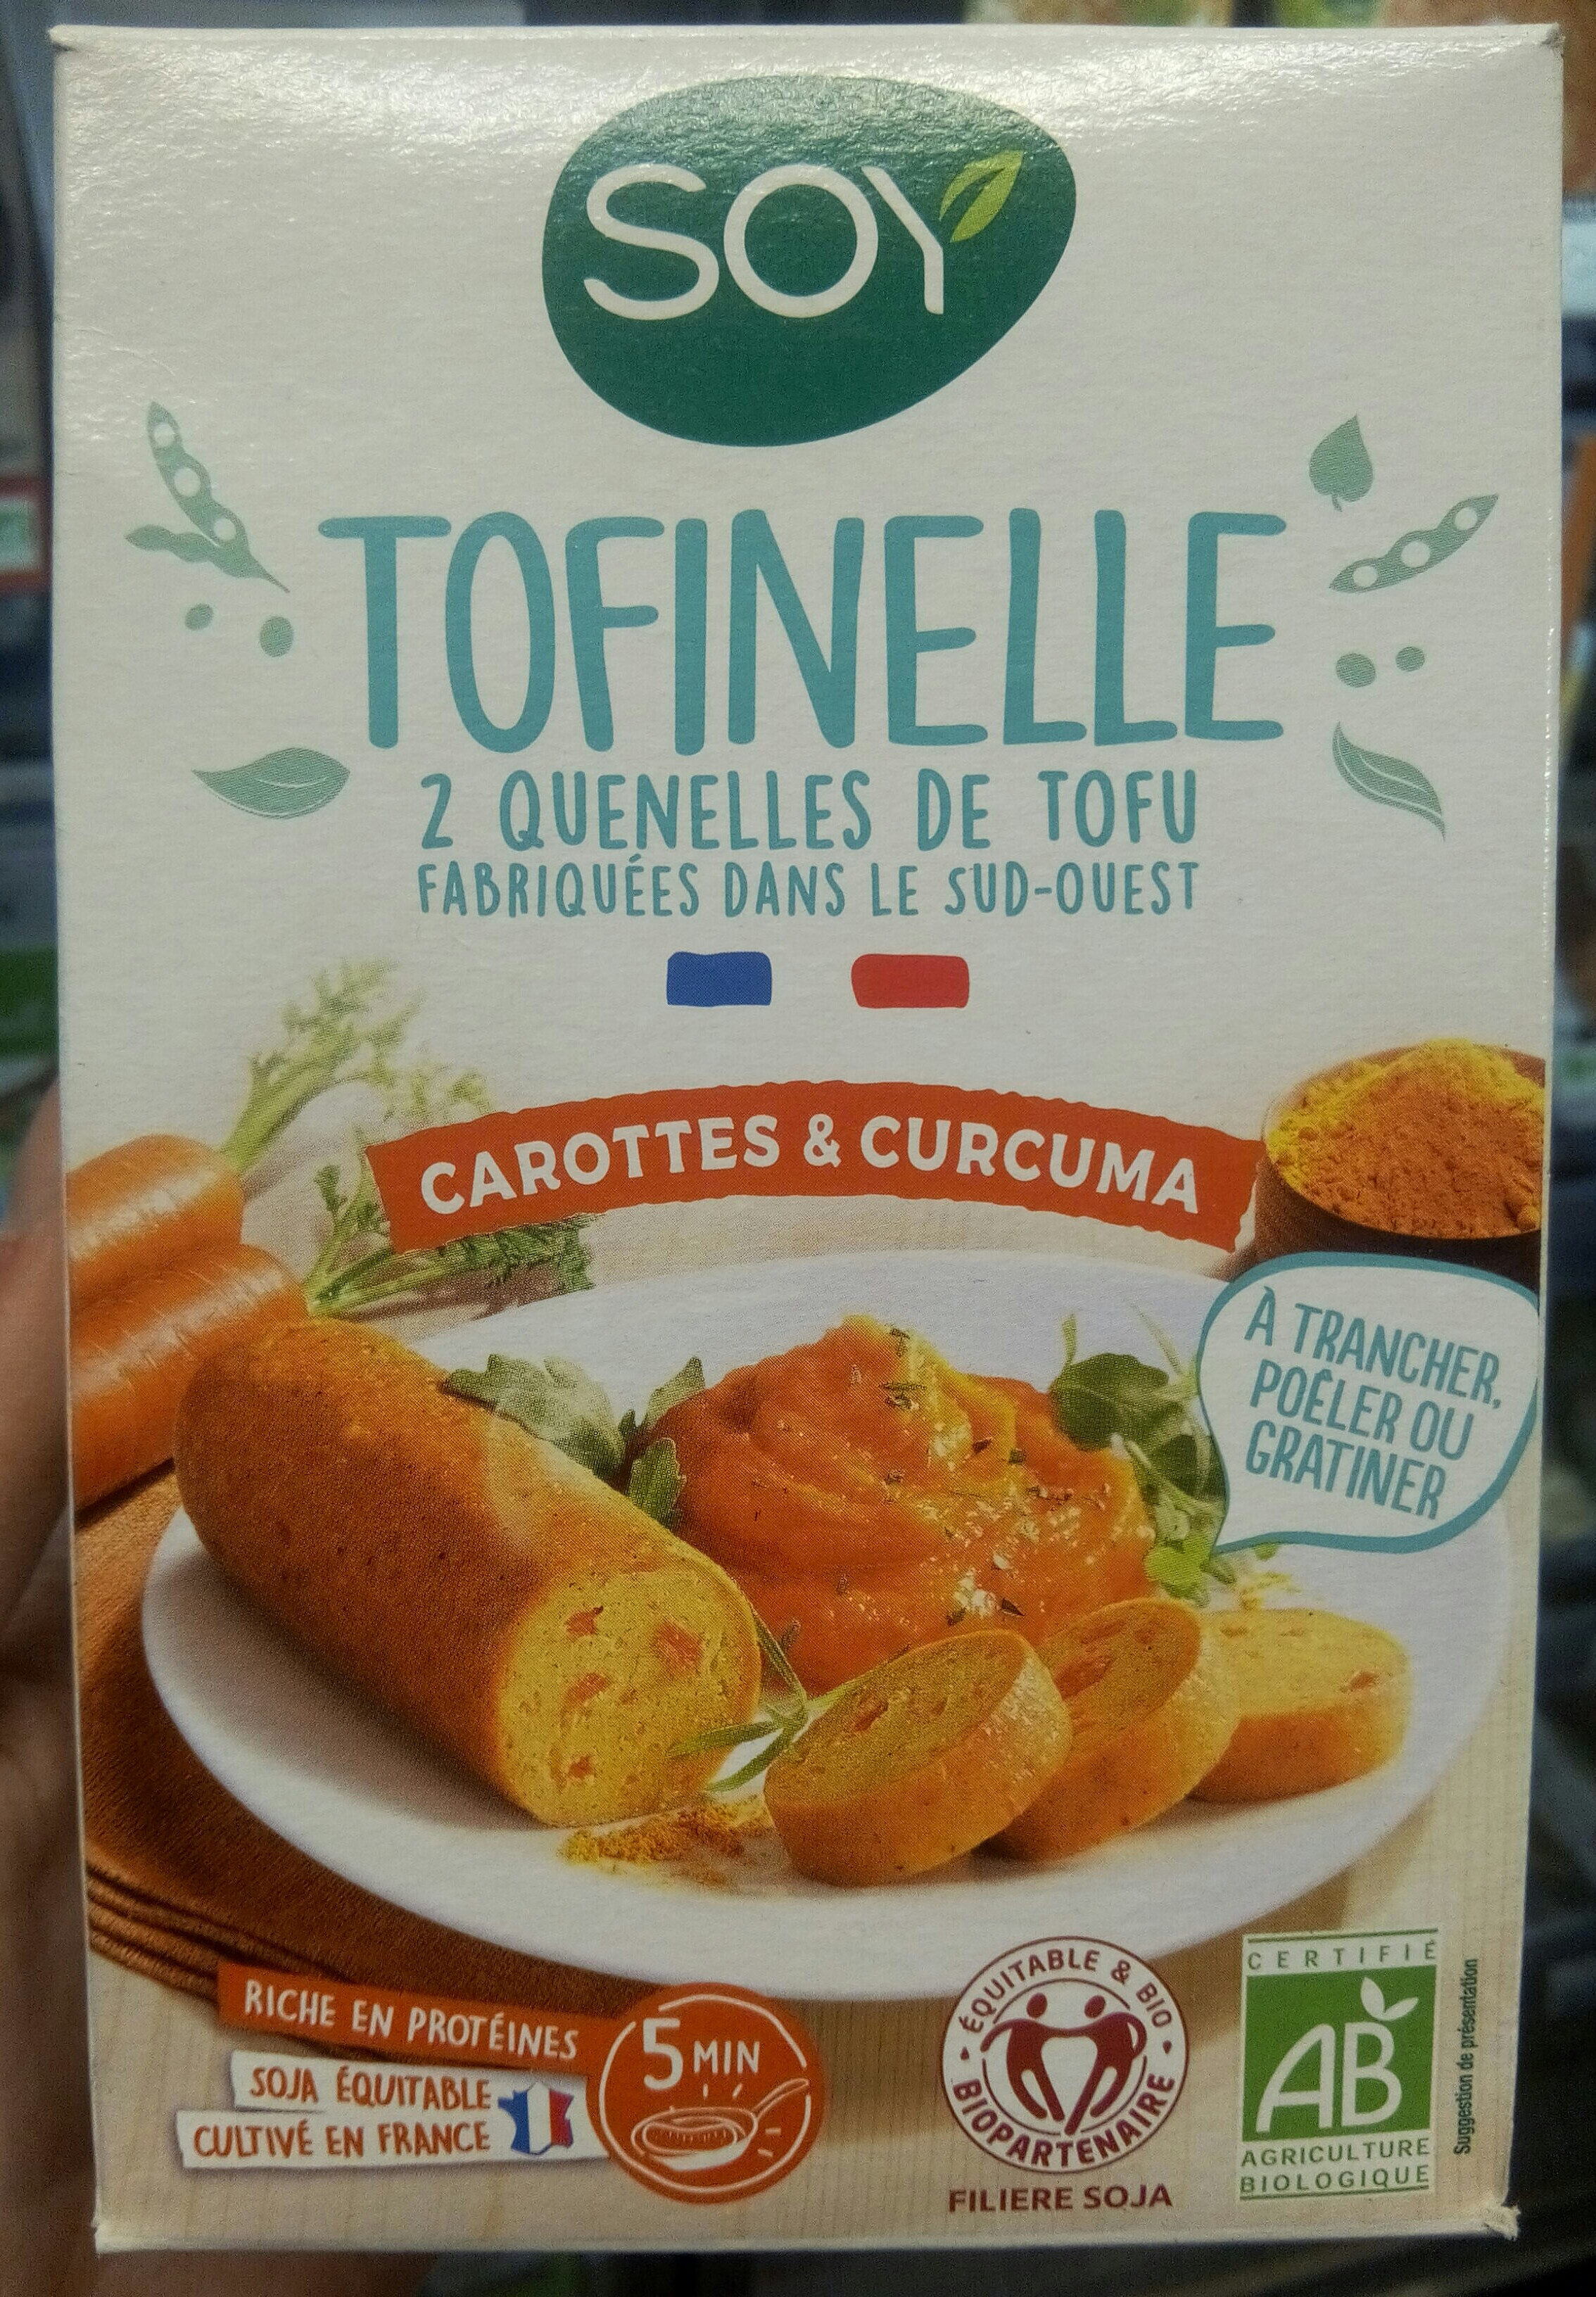 Tofinelle carottes & curcuma bio - Product - fr